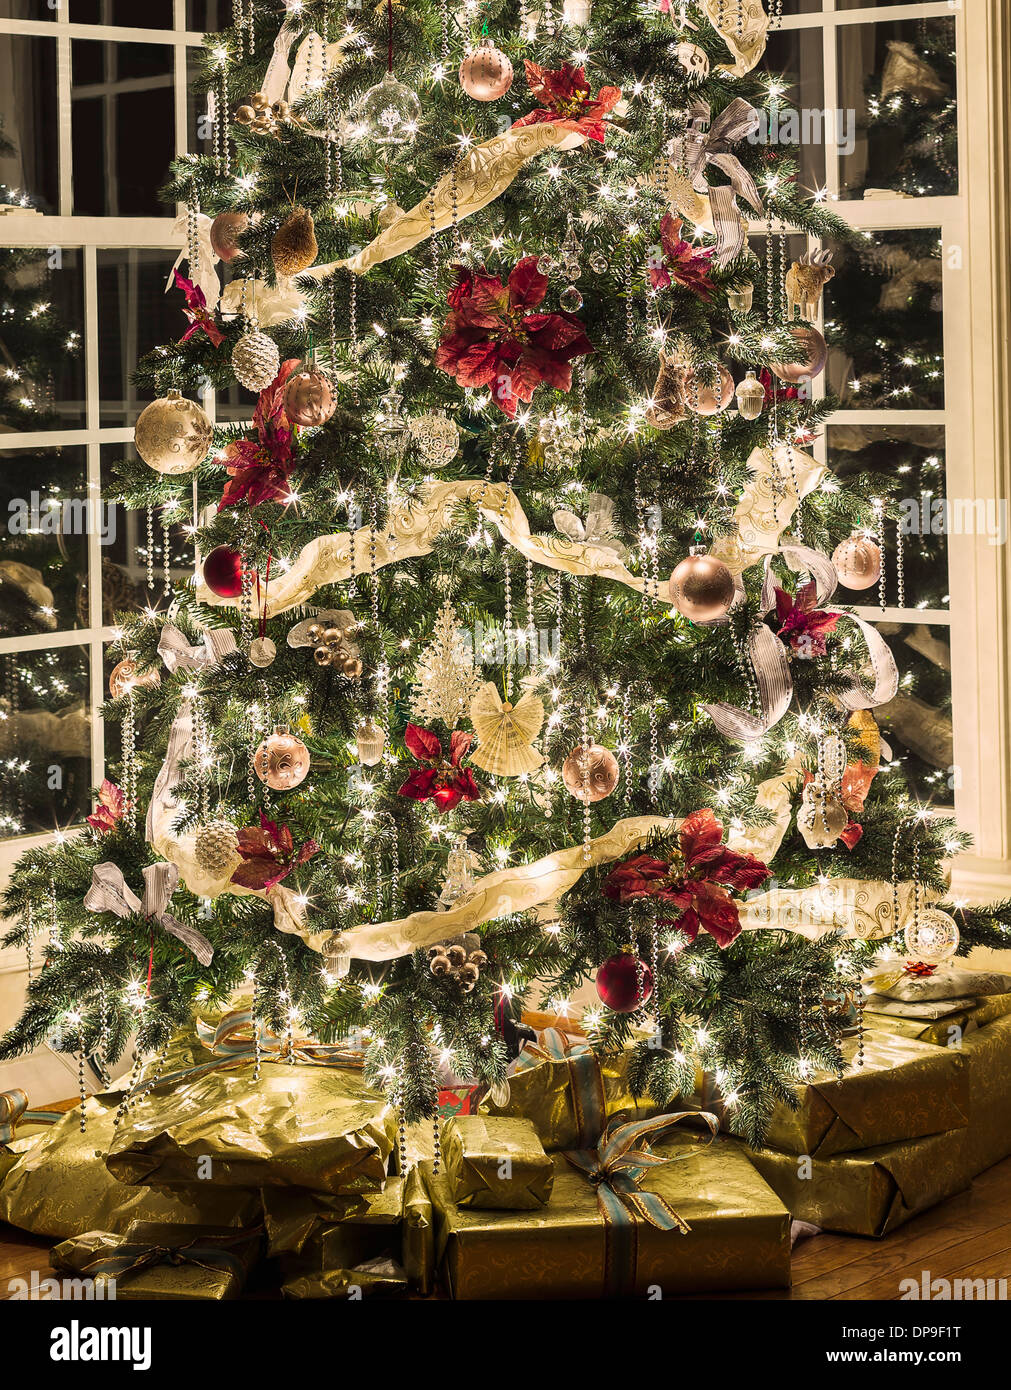 Árbol de navidad con luces y adornos y regalos de Navidad debajo de una casa salón Foto de stock